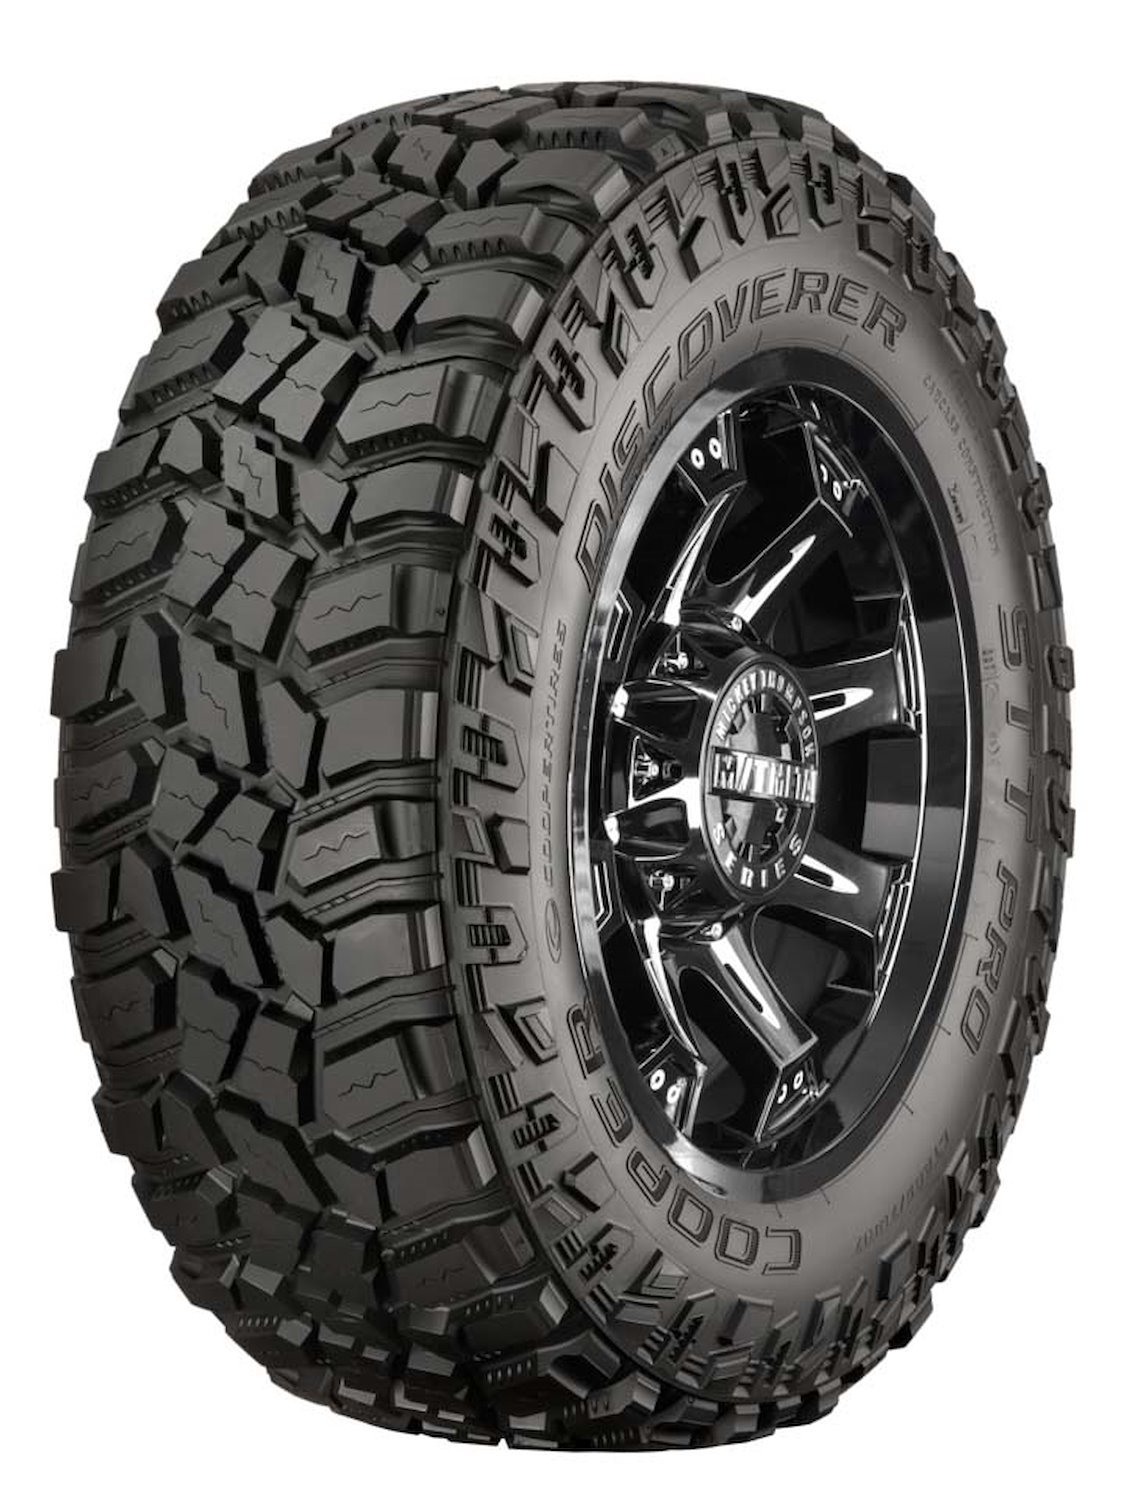 Discoverer STT PRO All-Terrain Tire, 35X12.50R18LT